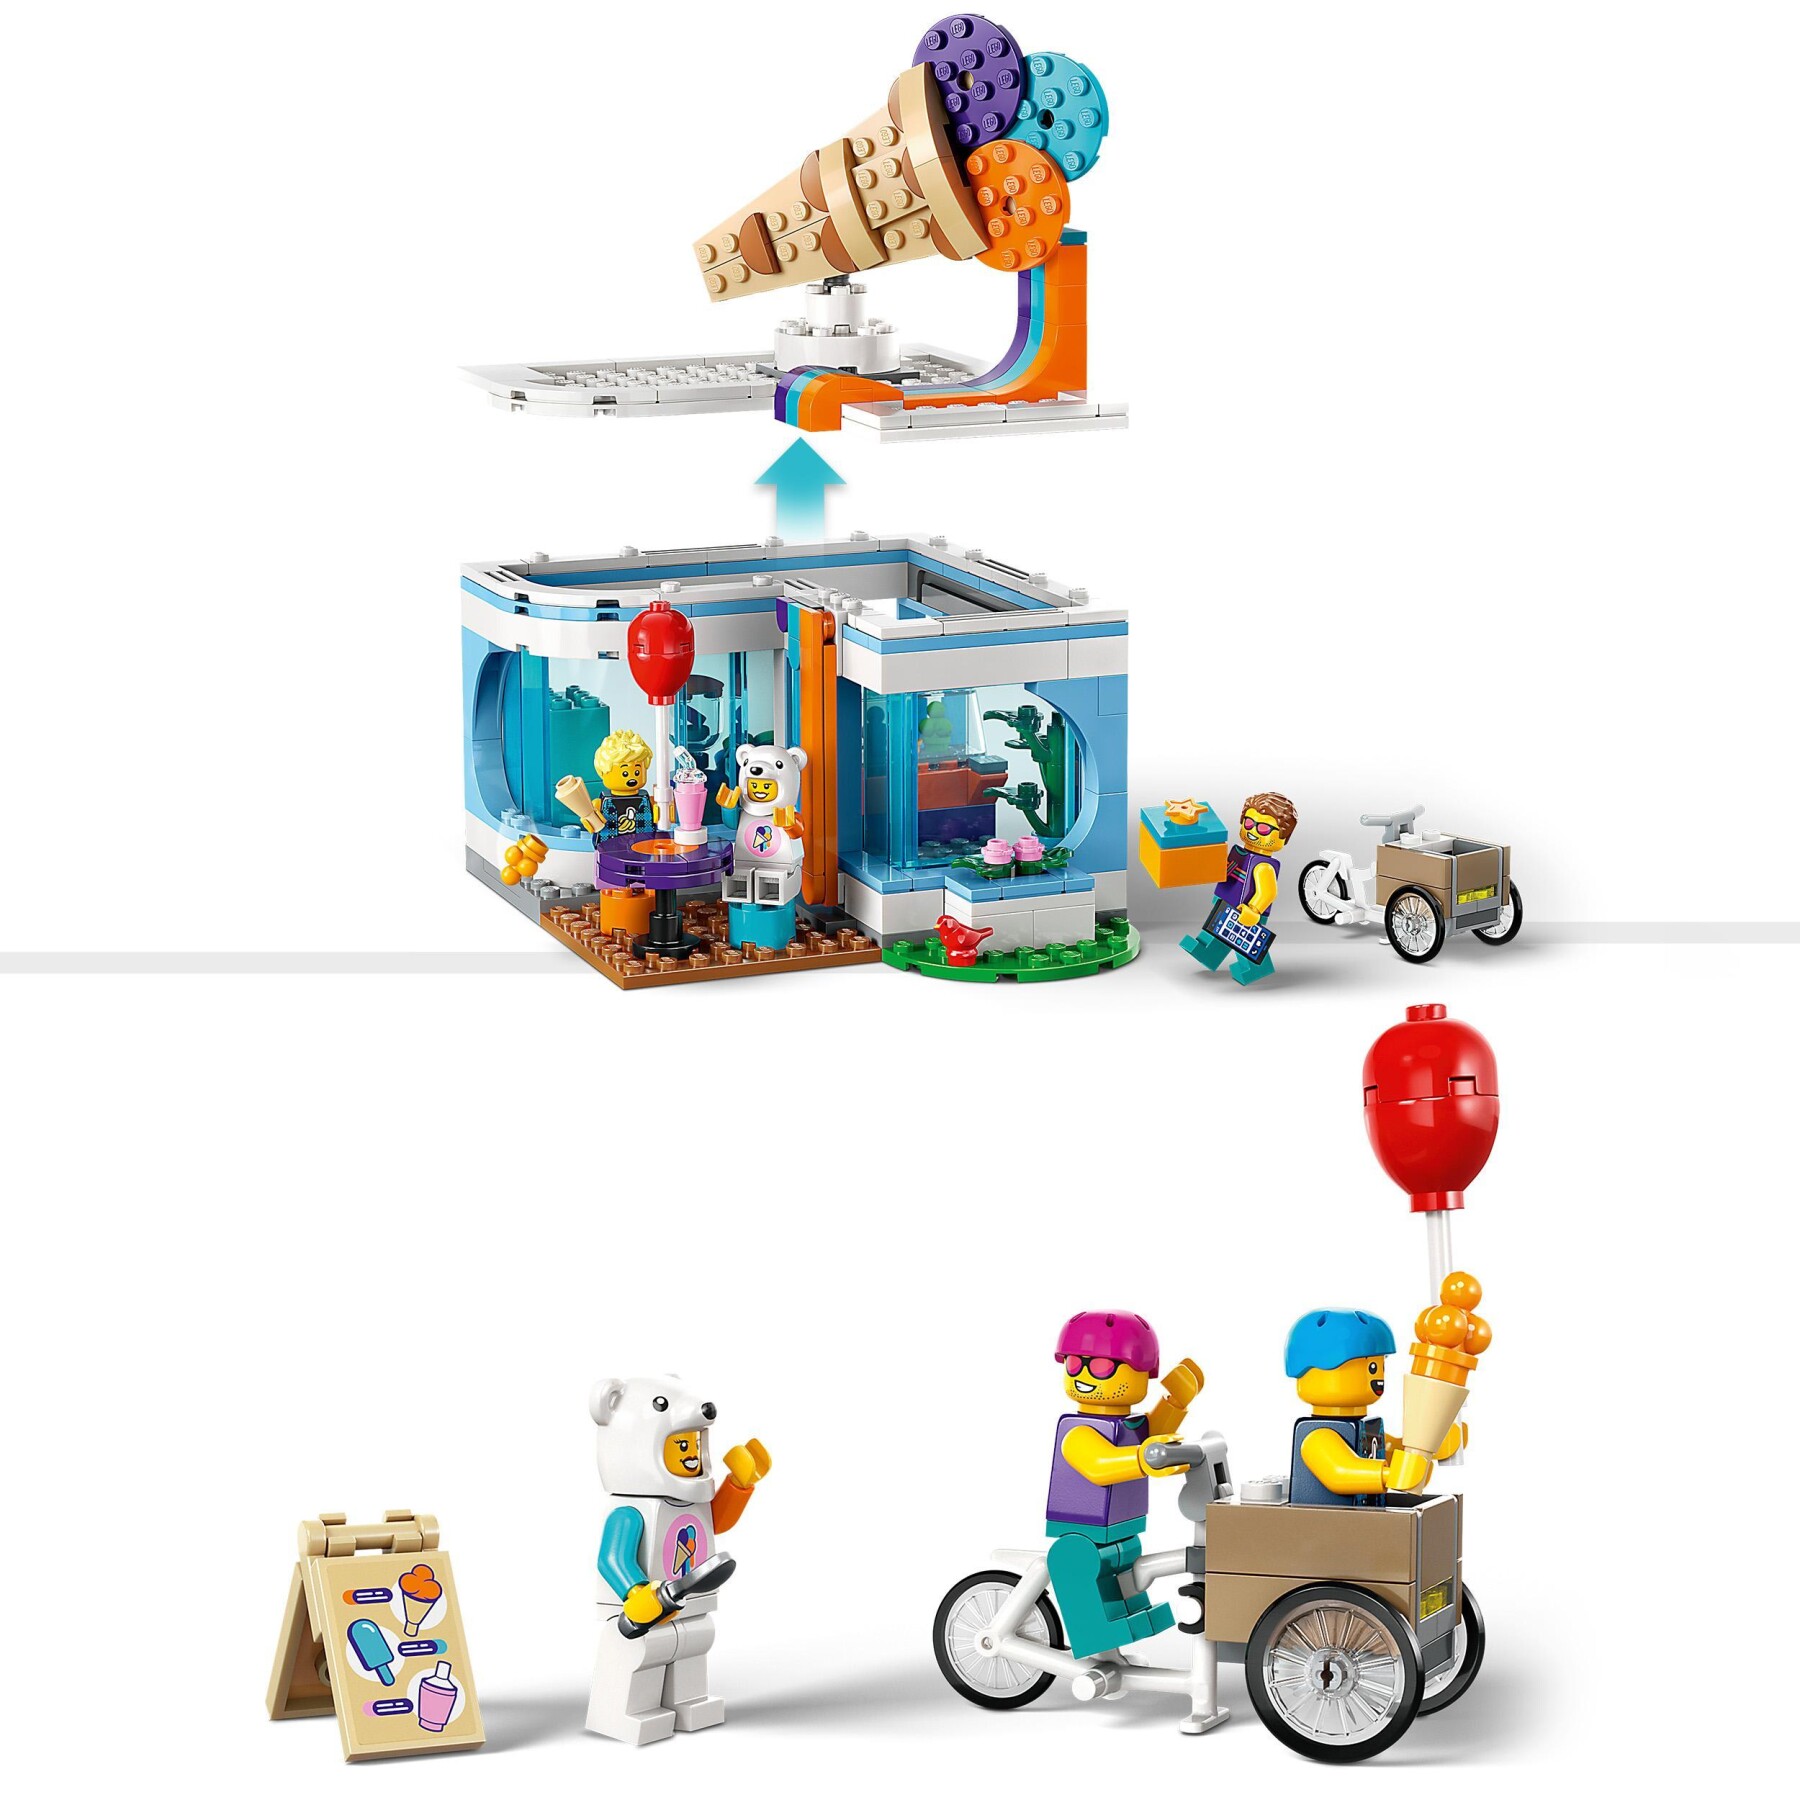 Lego city 60363 gelateria, giochi per bambini 6+ anni con carretto dei gelati giocattolo e 3 minifigure, idea regalo, set 2023 - LEGO CITY